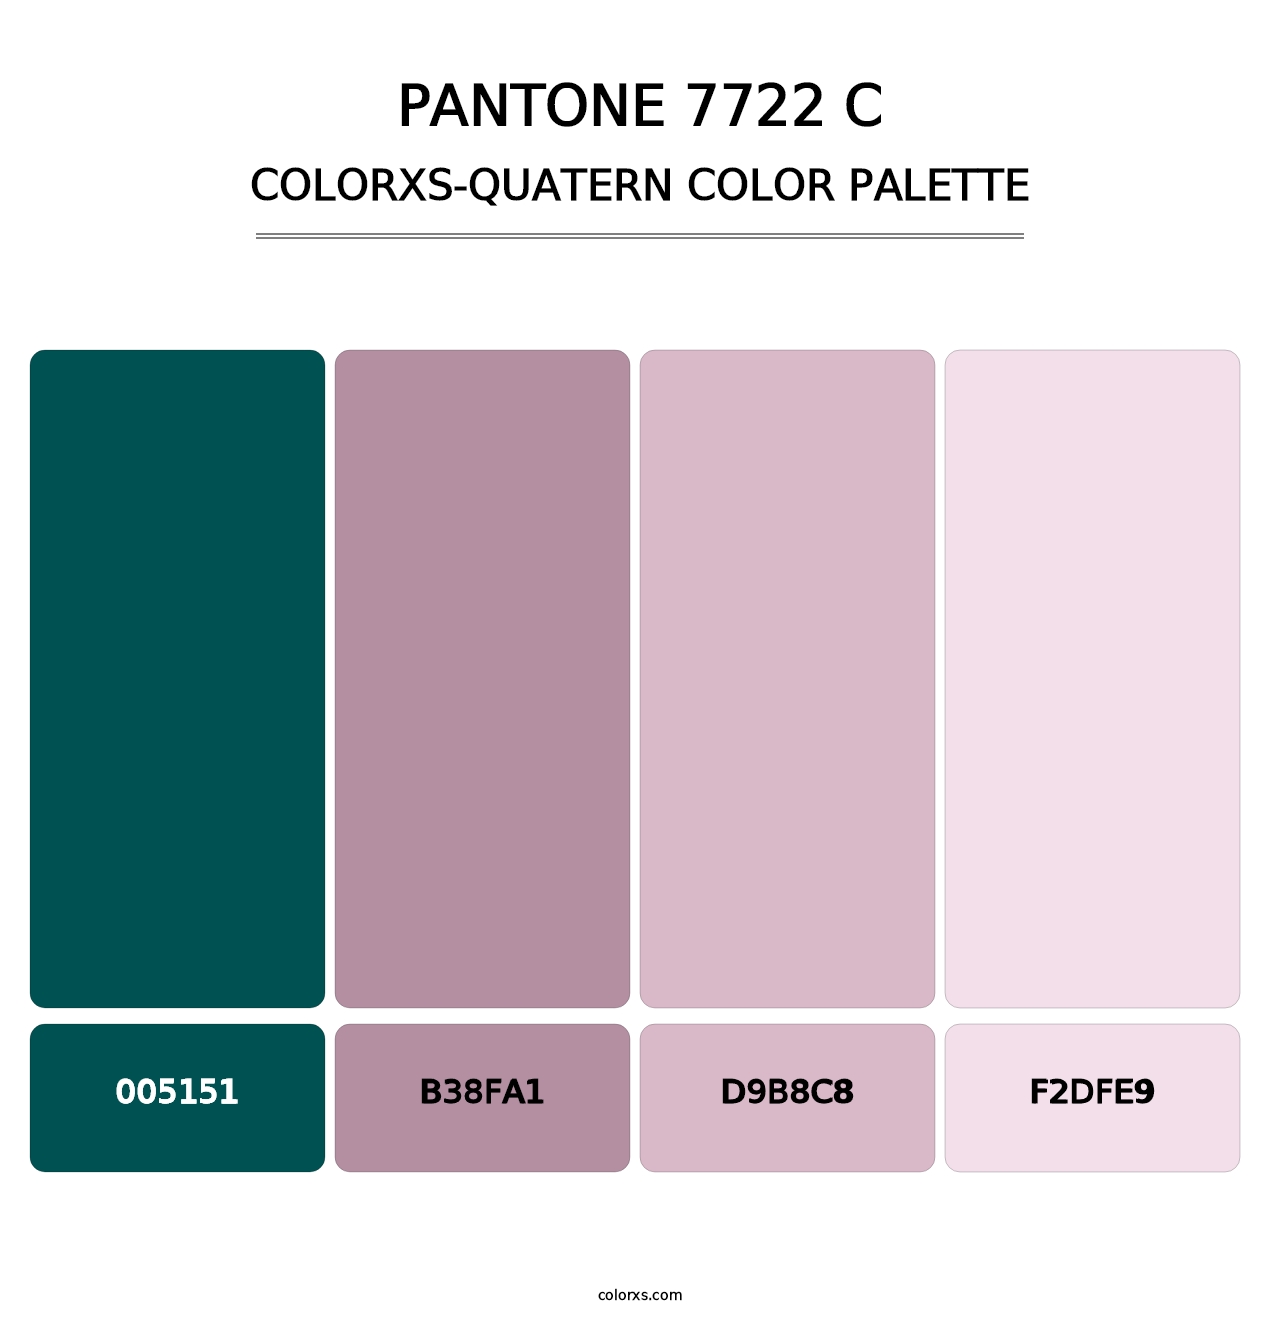 PANTONE 7722 C - Colorxs Quatern Palette